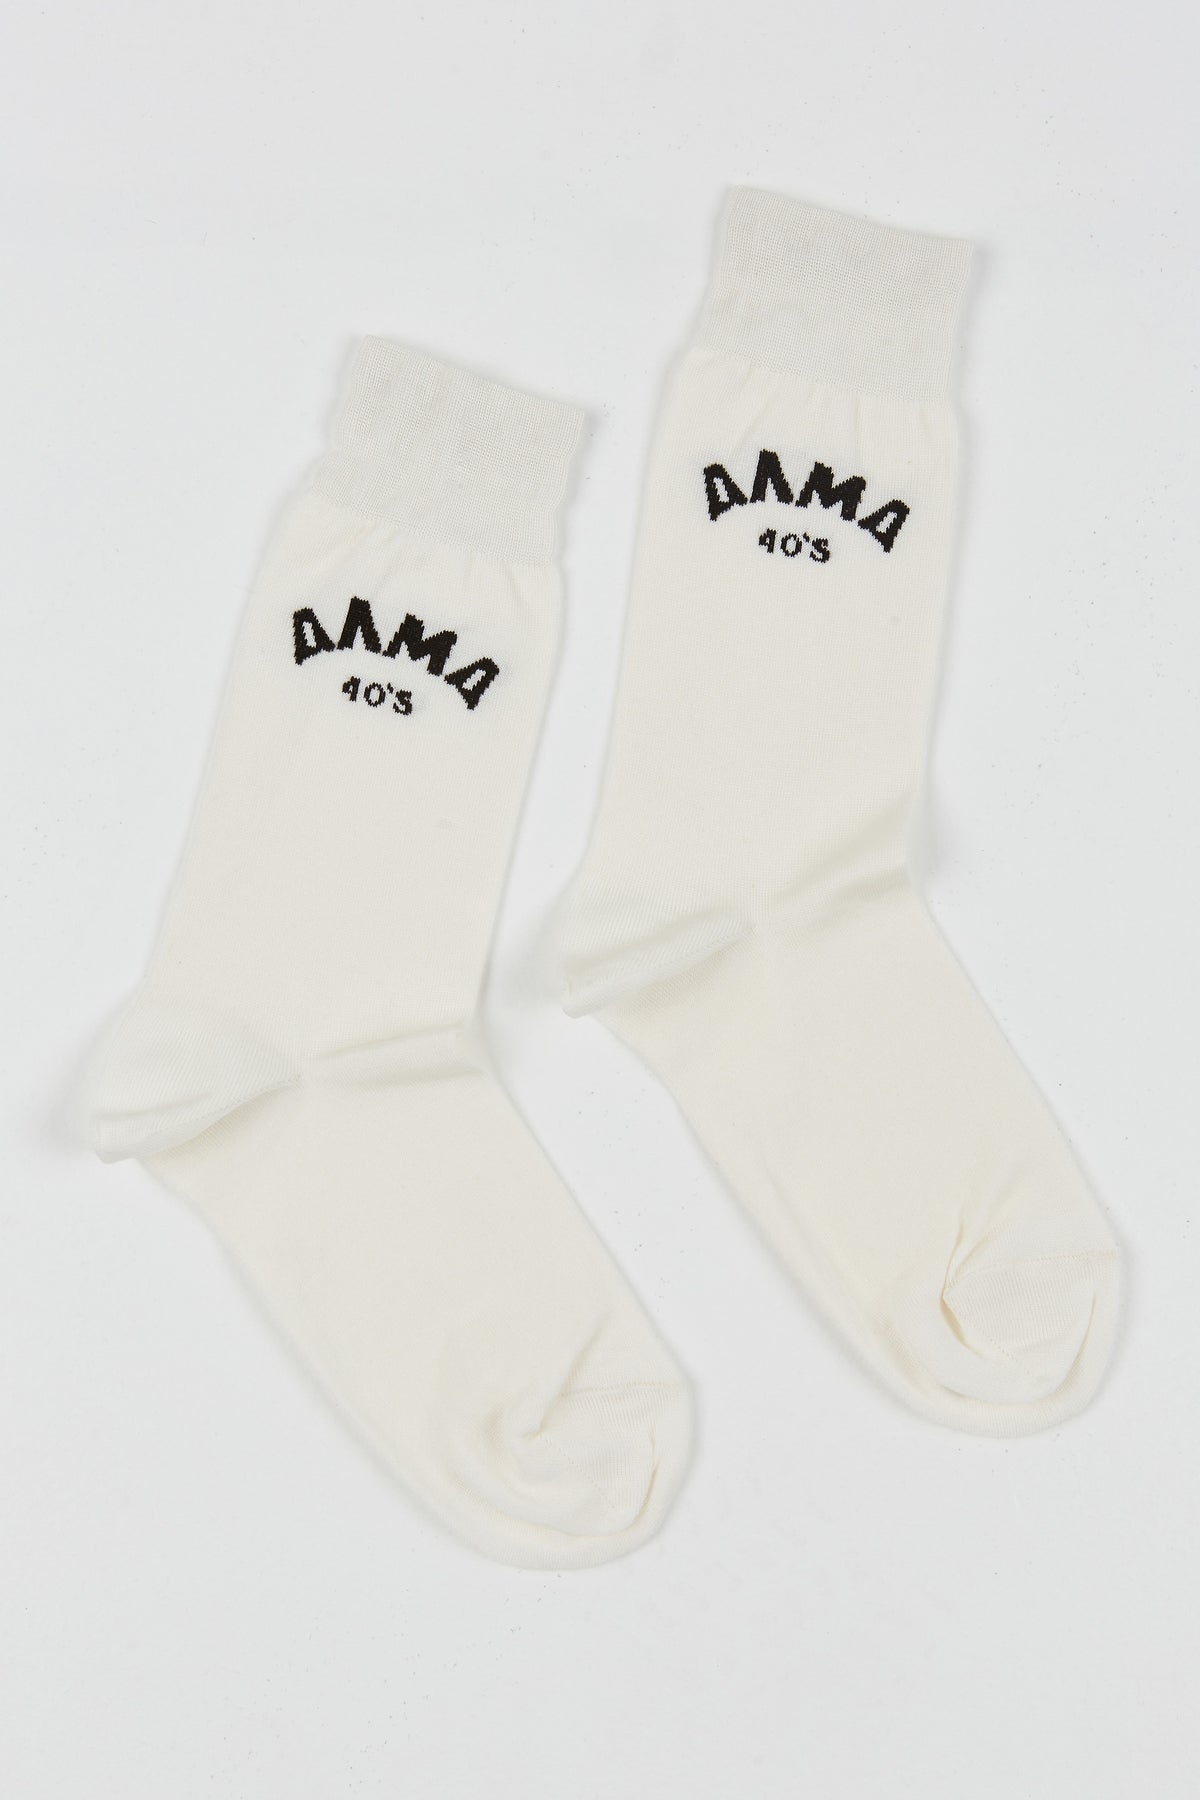 Alma 40s Socks White